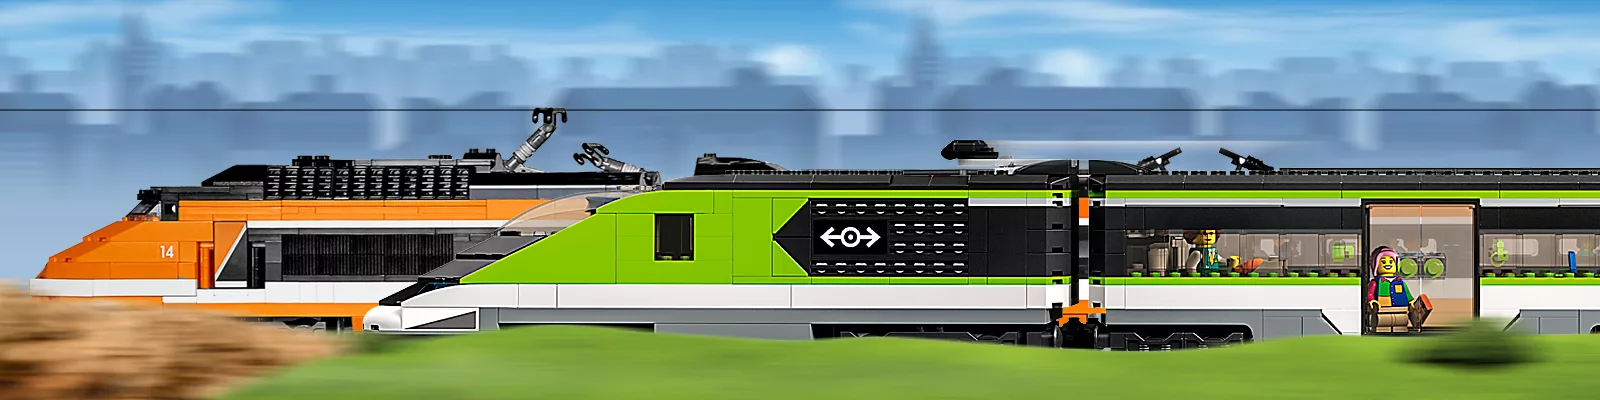 Train électrique télécommandé Lego City TGV n°60051